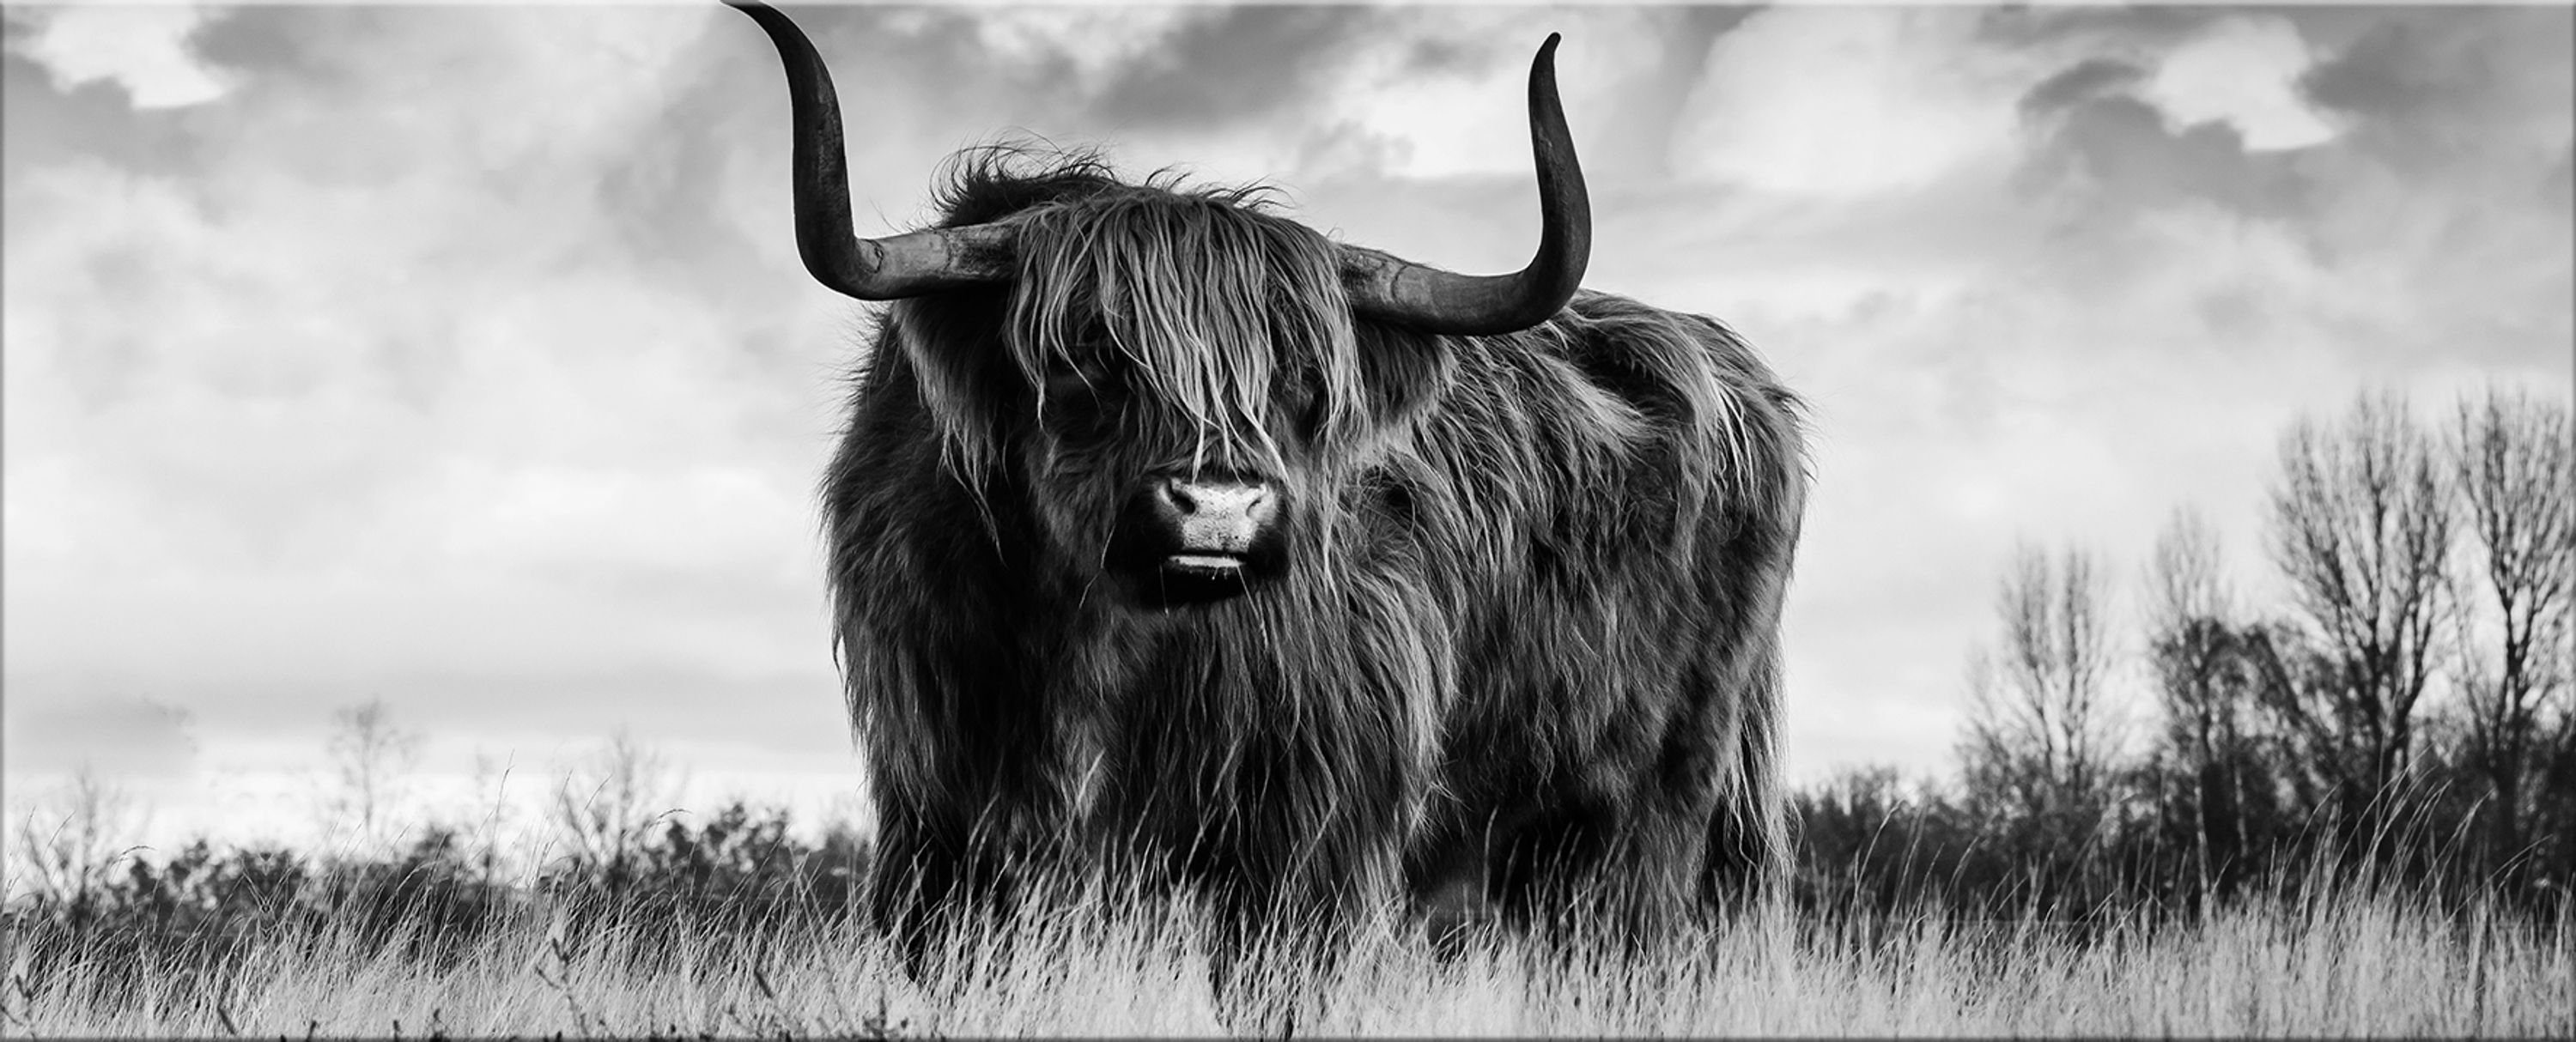 XXL Bild schwarz-weiß Kuh artissimo aus quer, 125x50 cm Hochland-Rinder Tiere: Foto Glasbild Glas groß Glasbild